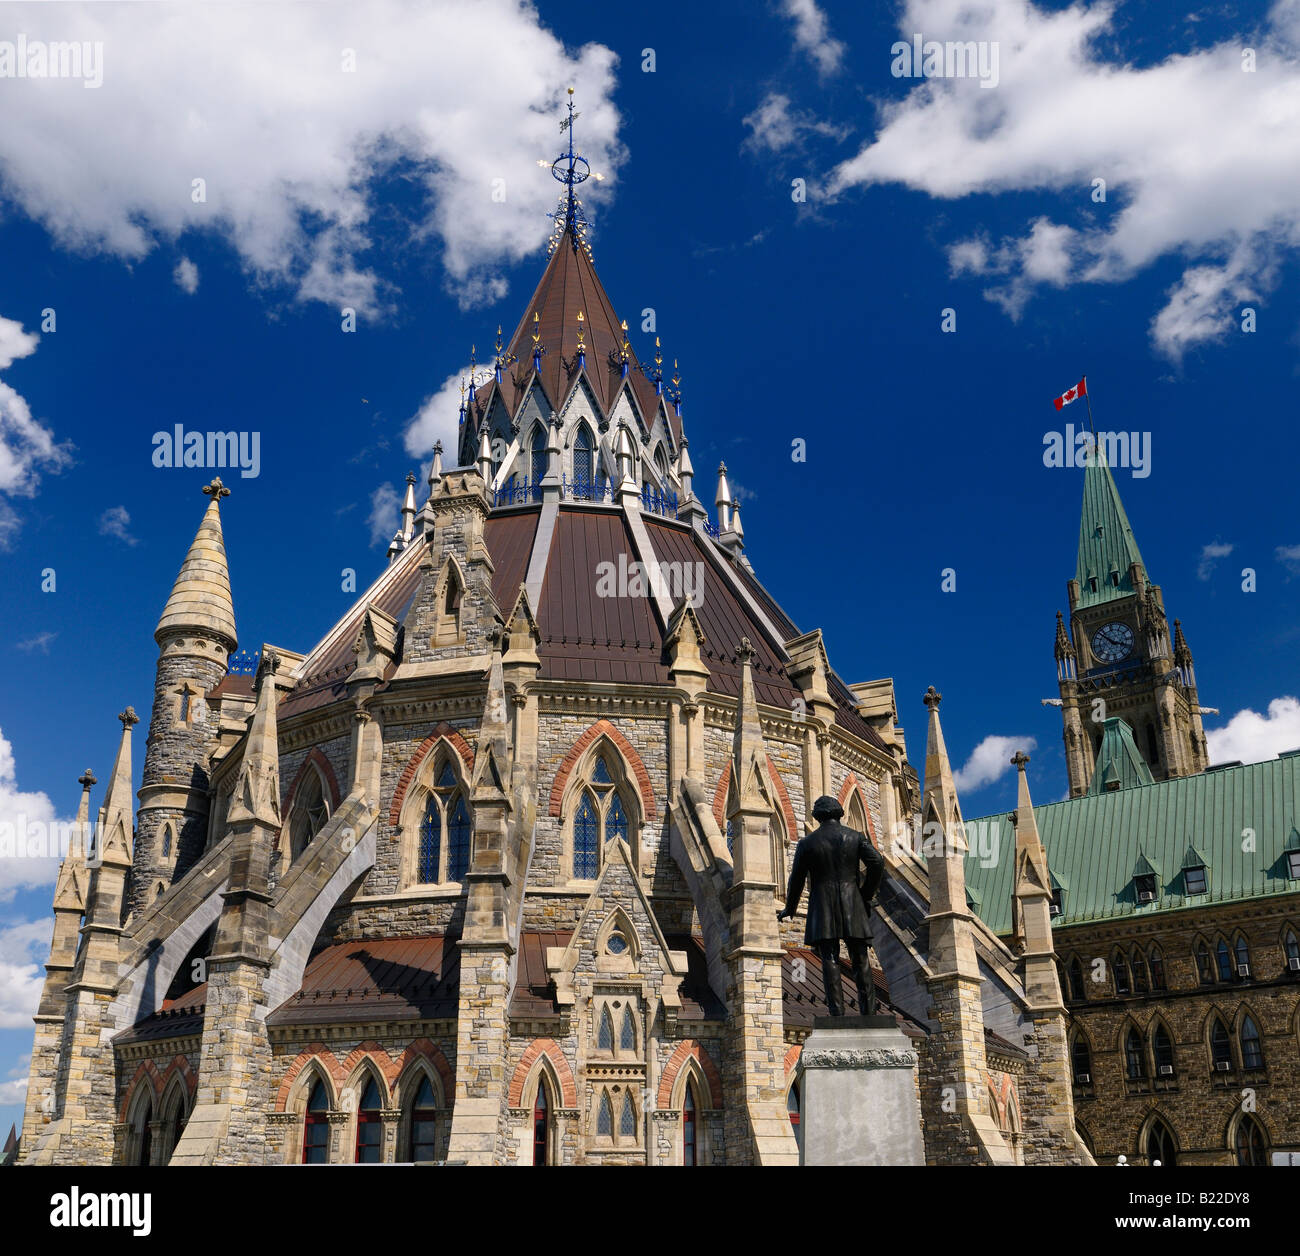 Rénové et bibliothèque de l'Édifice du centre de la tour de la paix avec des édifices du Parlement assemblée législative du gouvernement fédéral à Ottawa, capitale du Canada Banque D'Images